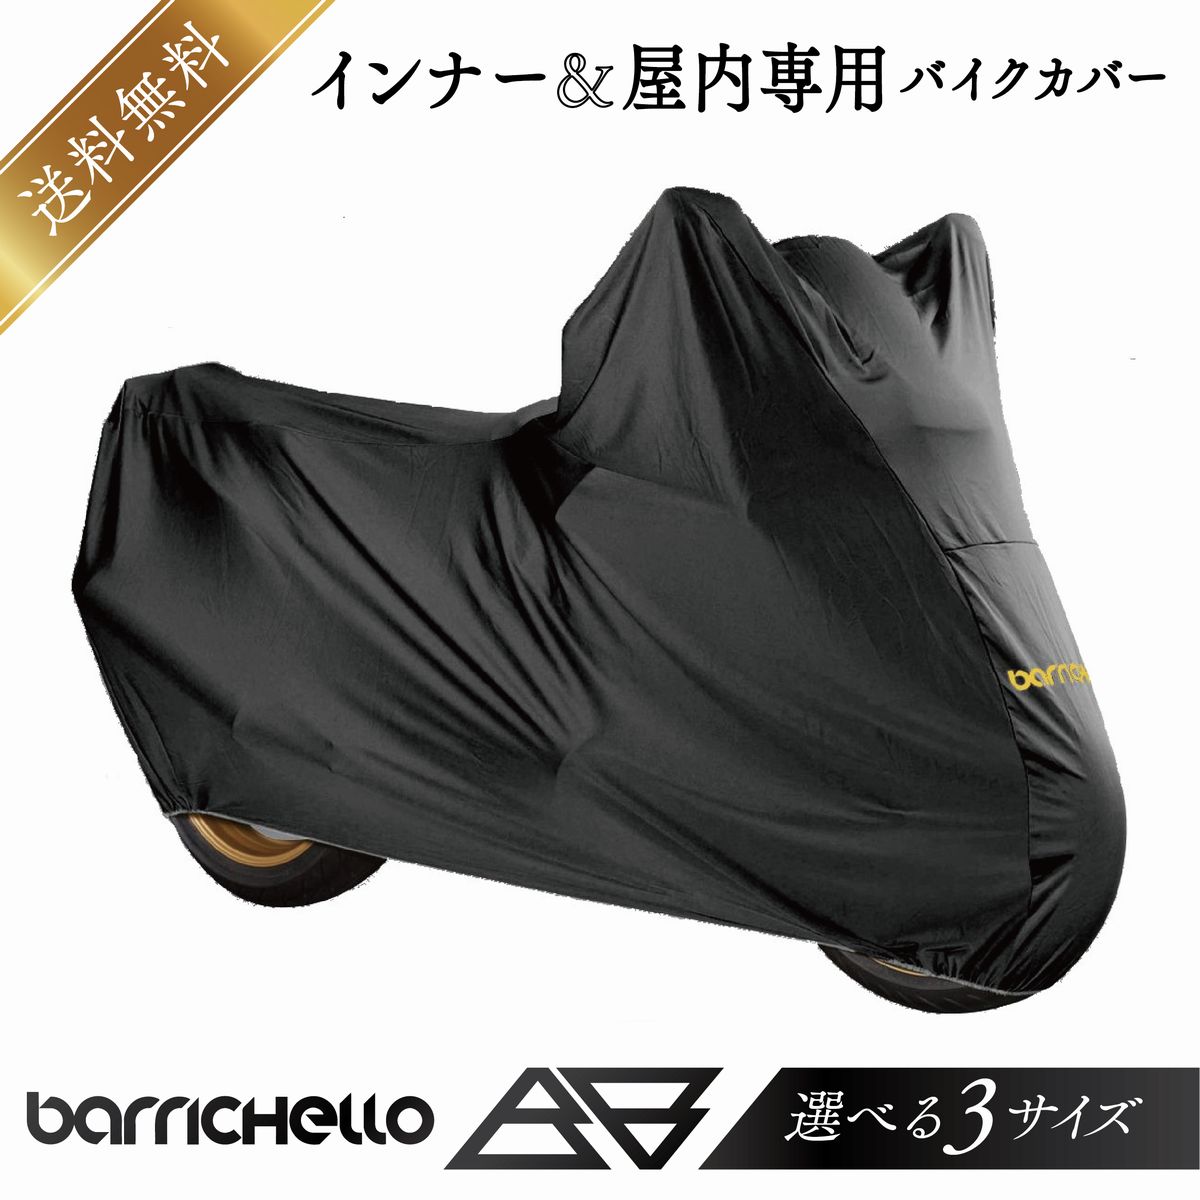 Barrichello( шероховатость виолончель ) внутренний & закрытый специальный мотоциклетный чехол S размер M размер L размер 